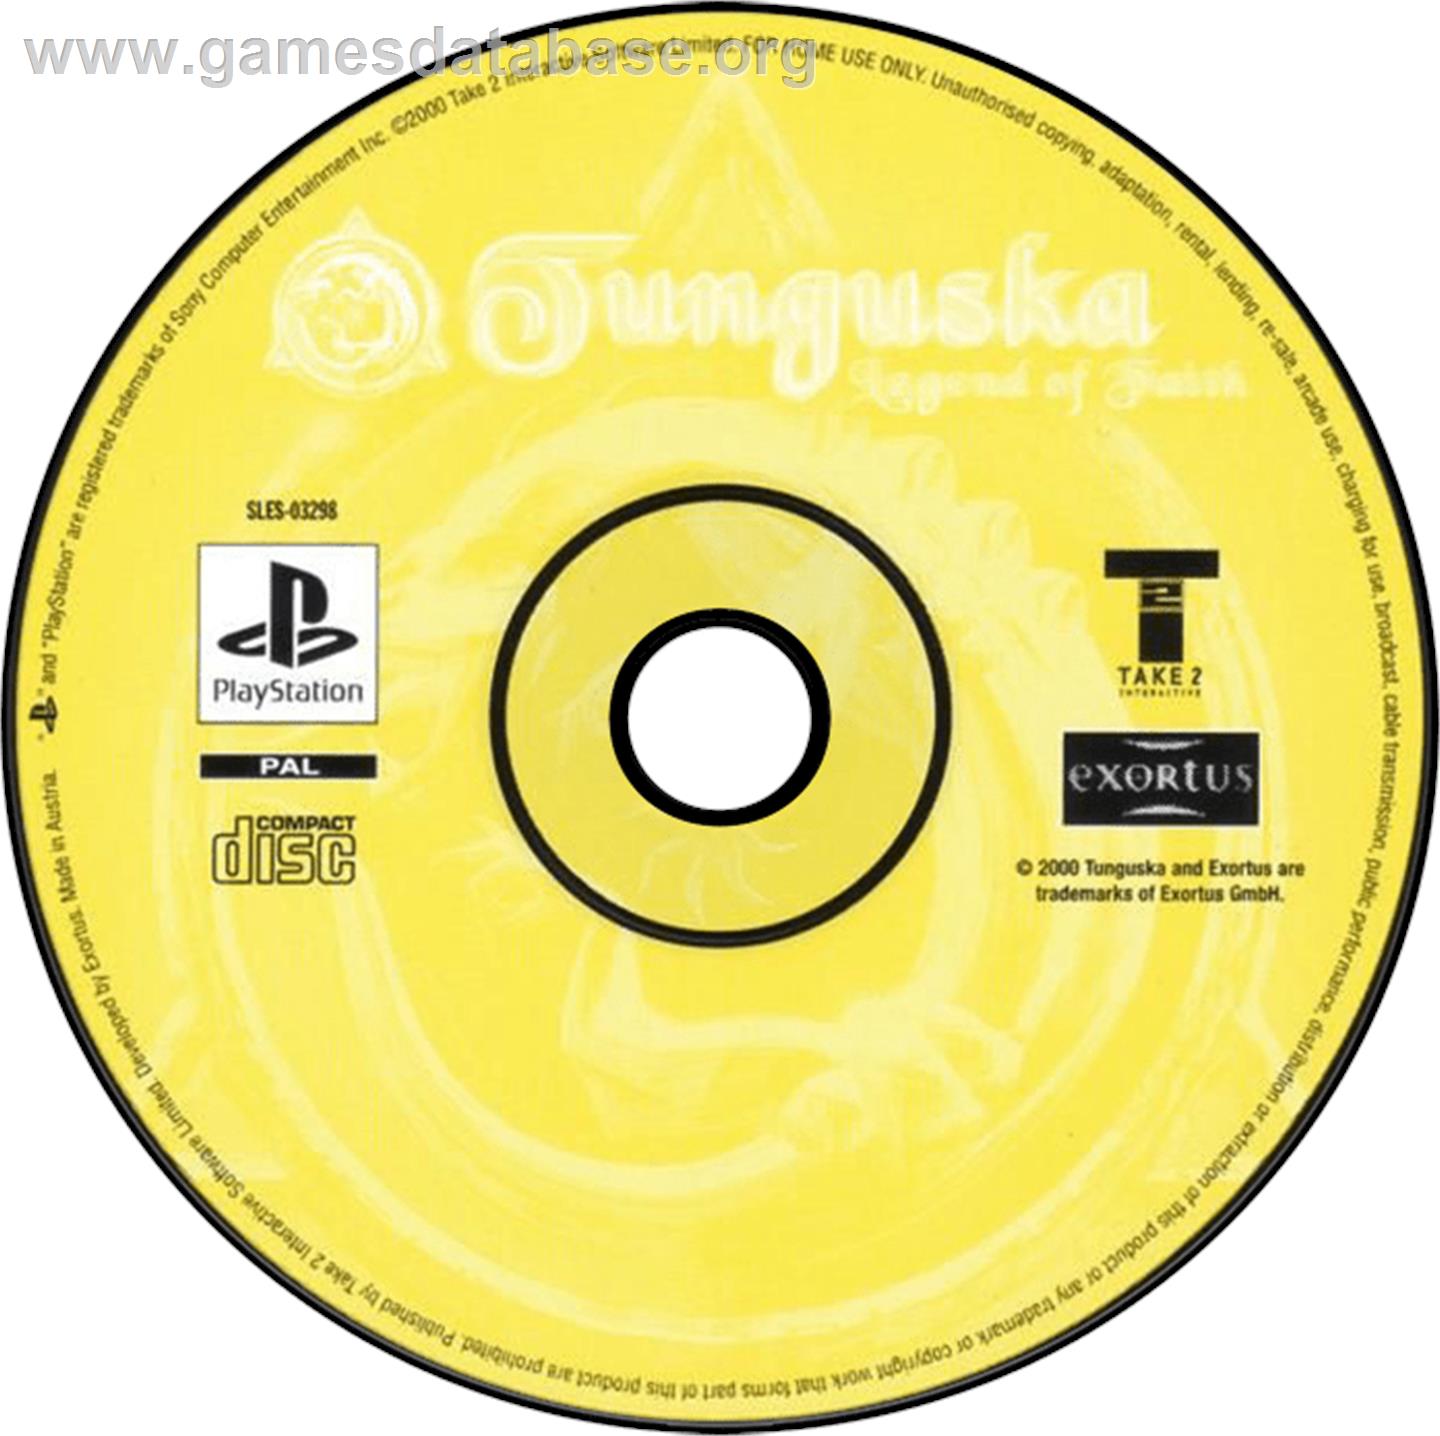 Tunguska: Legend of Faith - Sony Playstation - Artwork - Disc